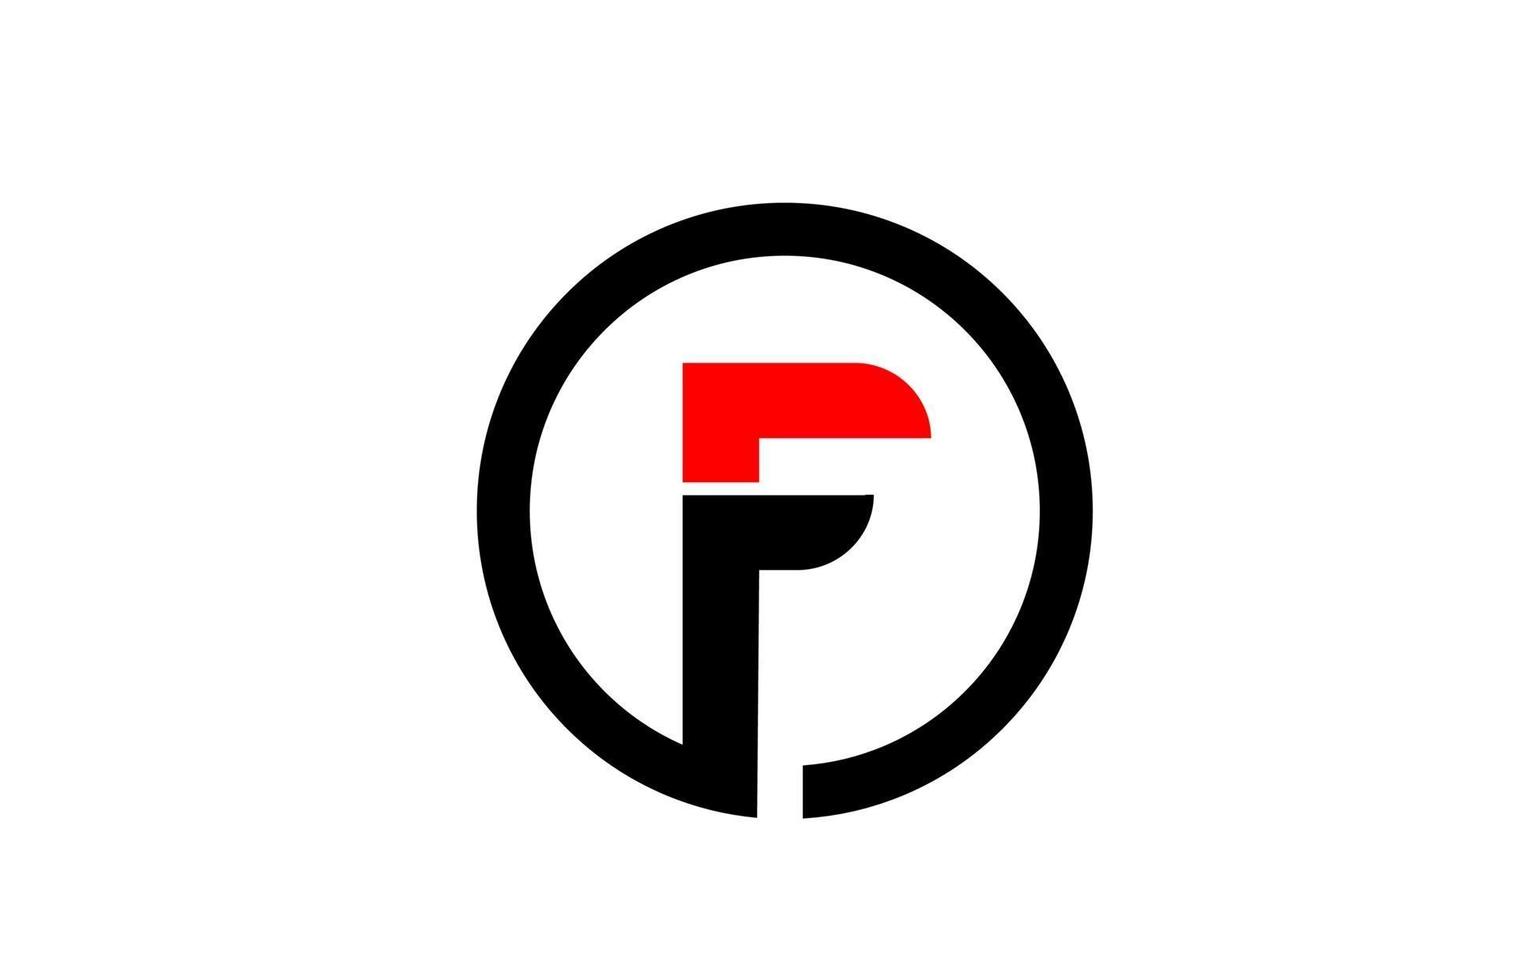 Design des Kreisalphabetbuchstabens f für das Firmenlogosymbol vektor